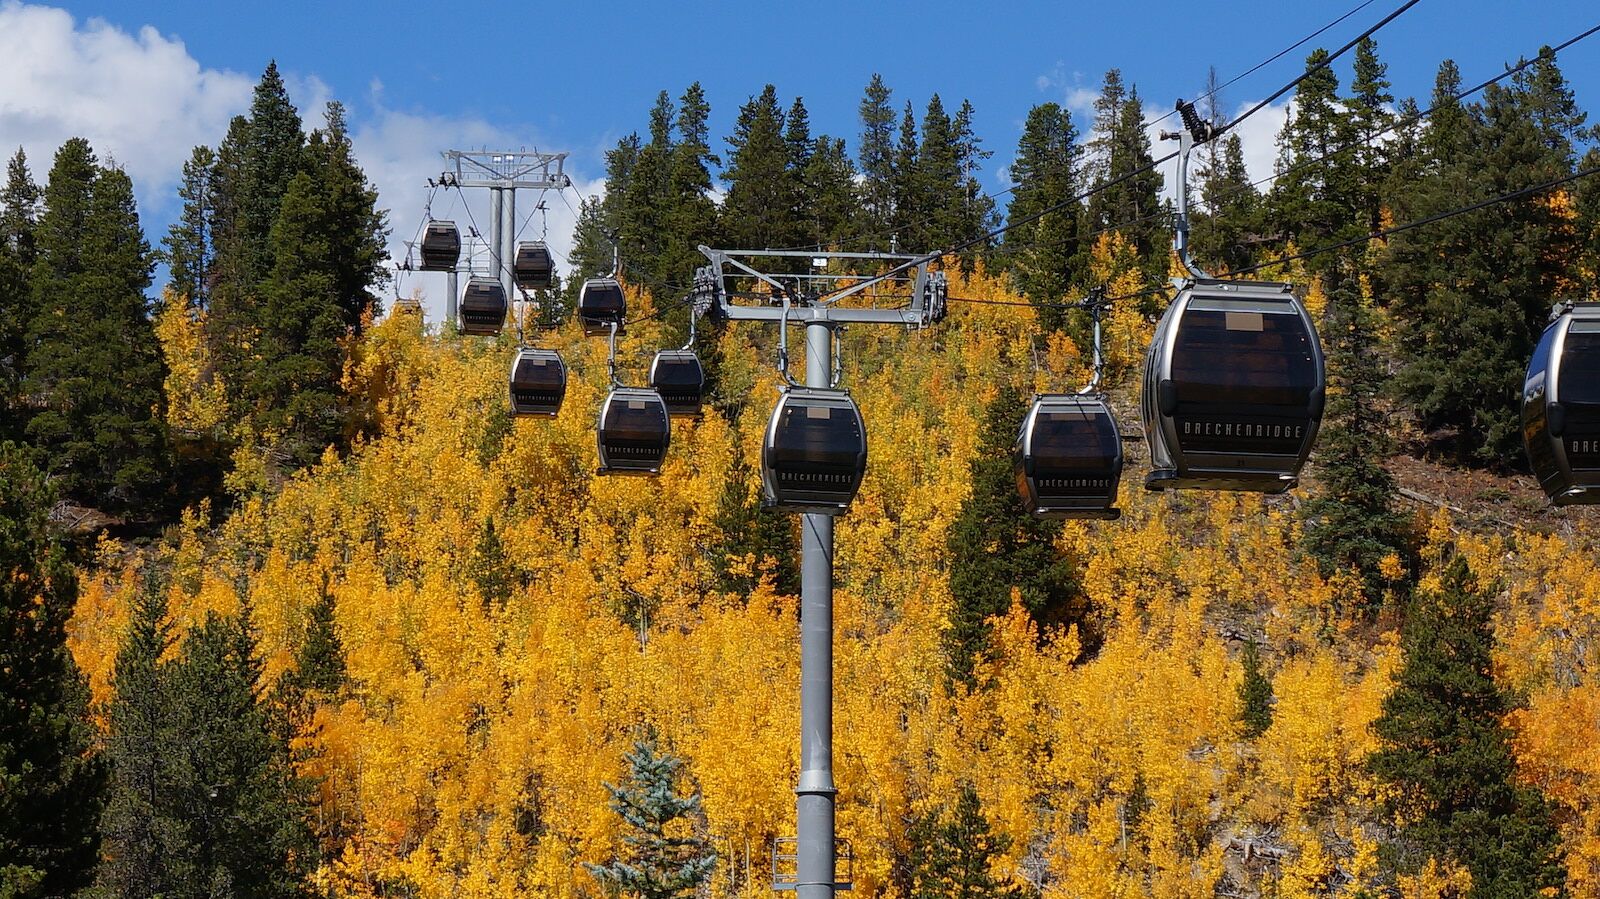 gondolas over aspen trees in the fall in breckenridge colorado